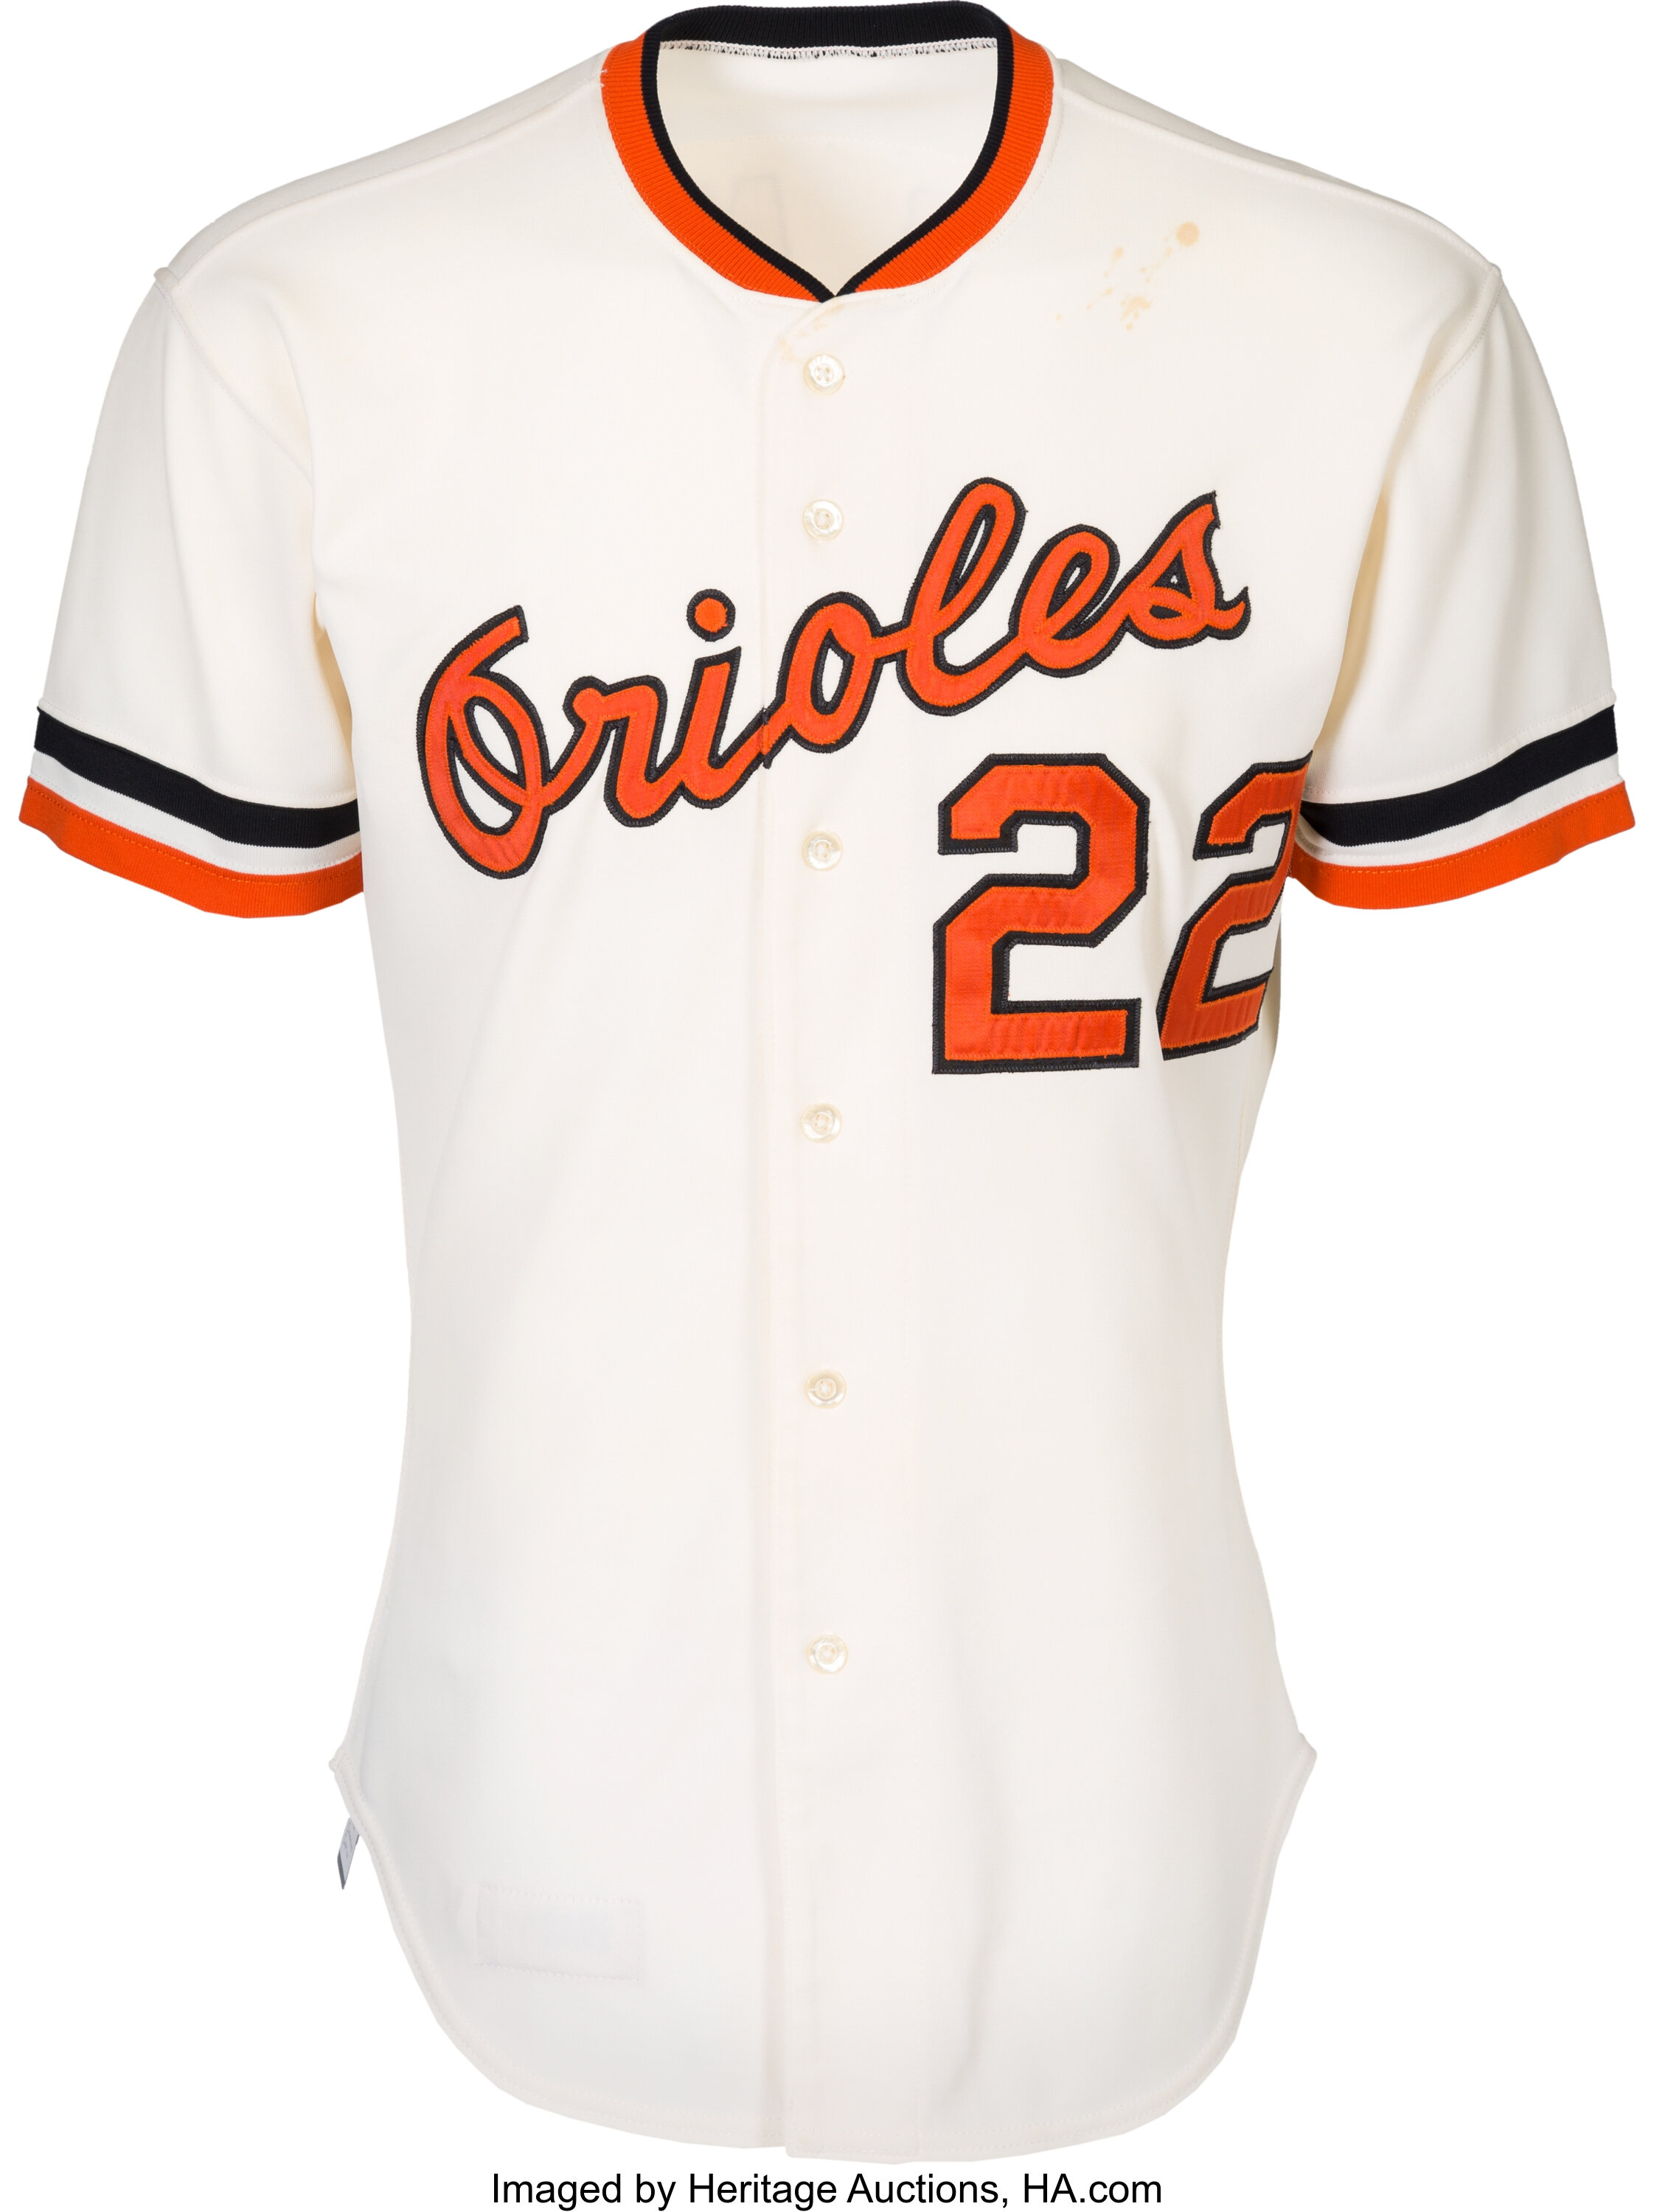 Baltimore Orioles unveil 2012 uniform changes - Baltimore Business